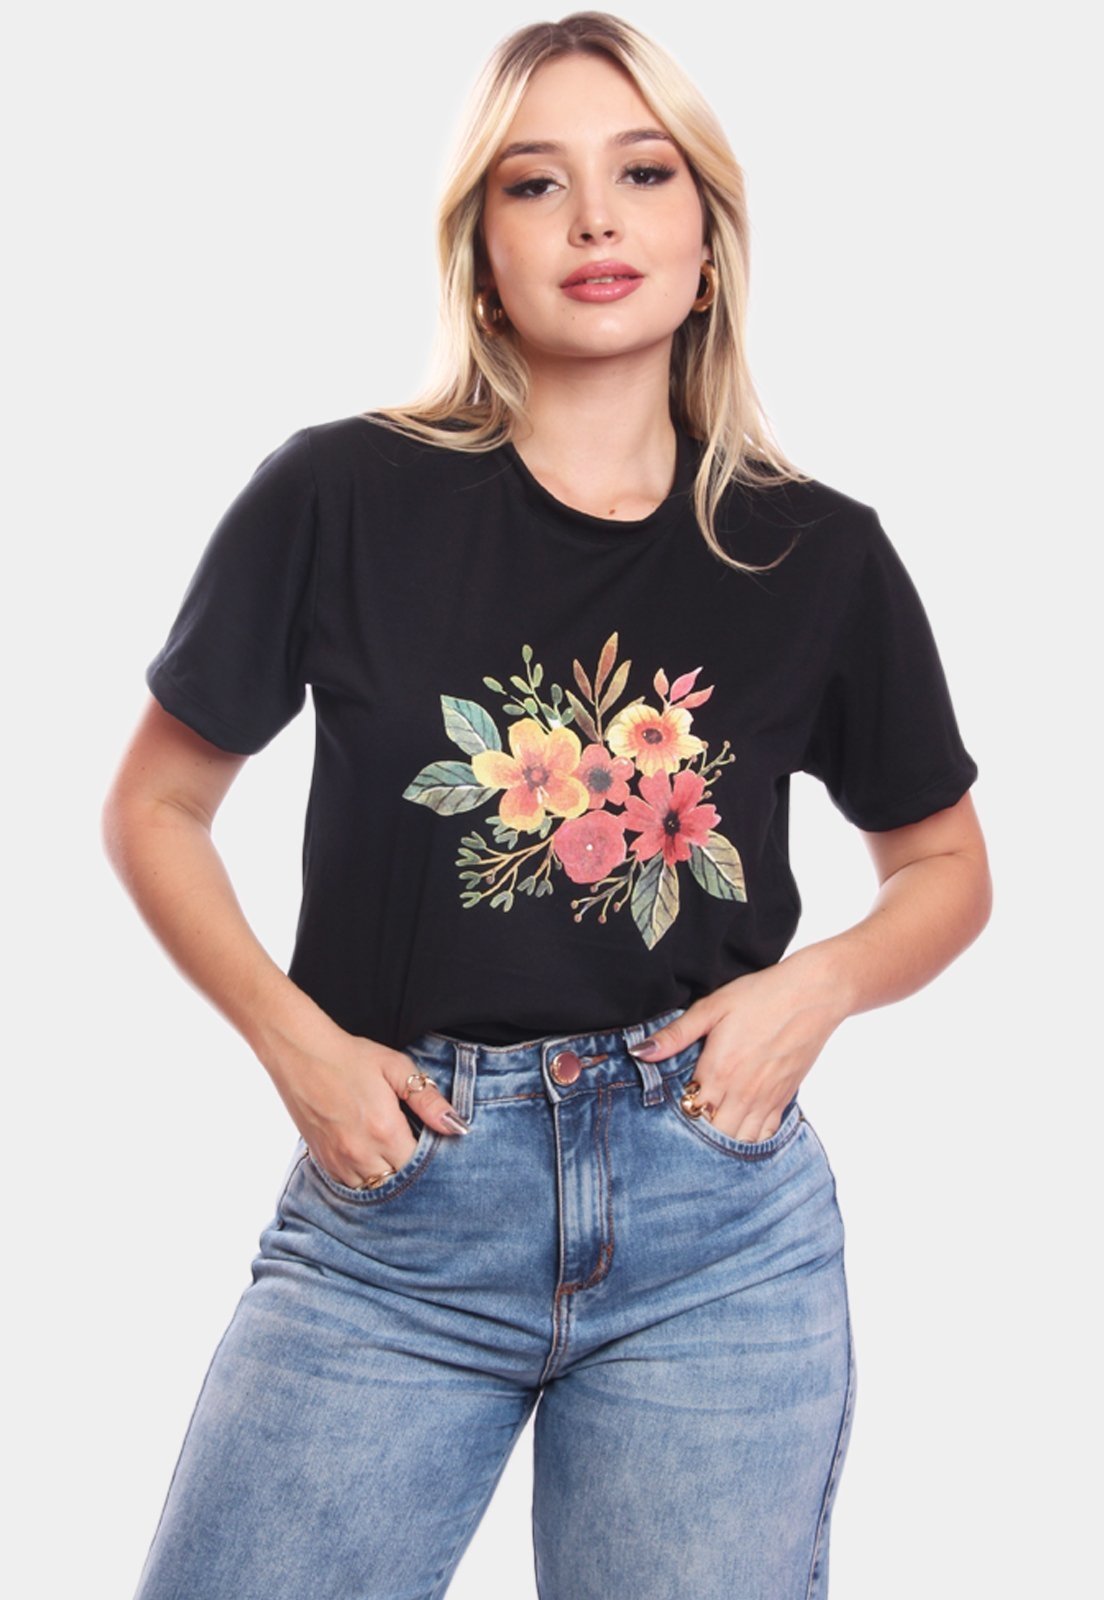 Tshirt Blusa Feminina Ramo de Flores Estampada Manga Curta Camiseta Camisa  Preto - Compre Agora